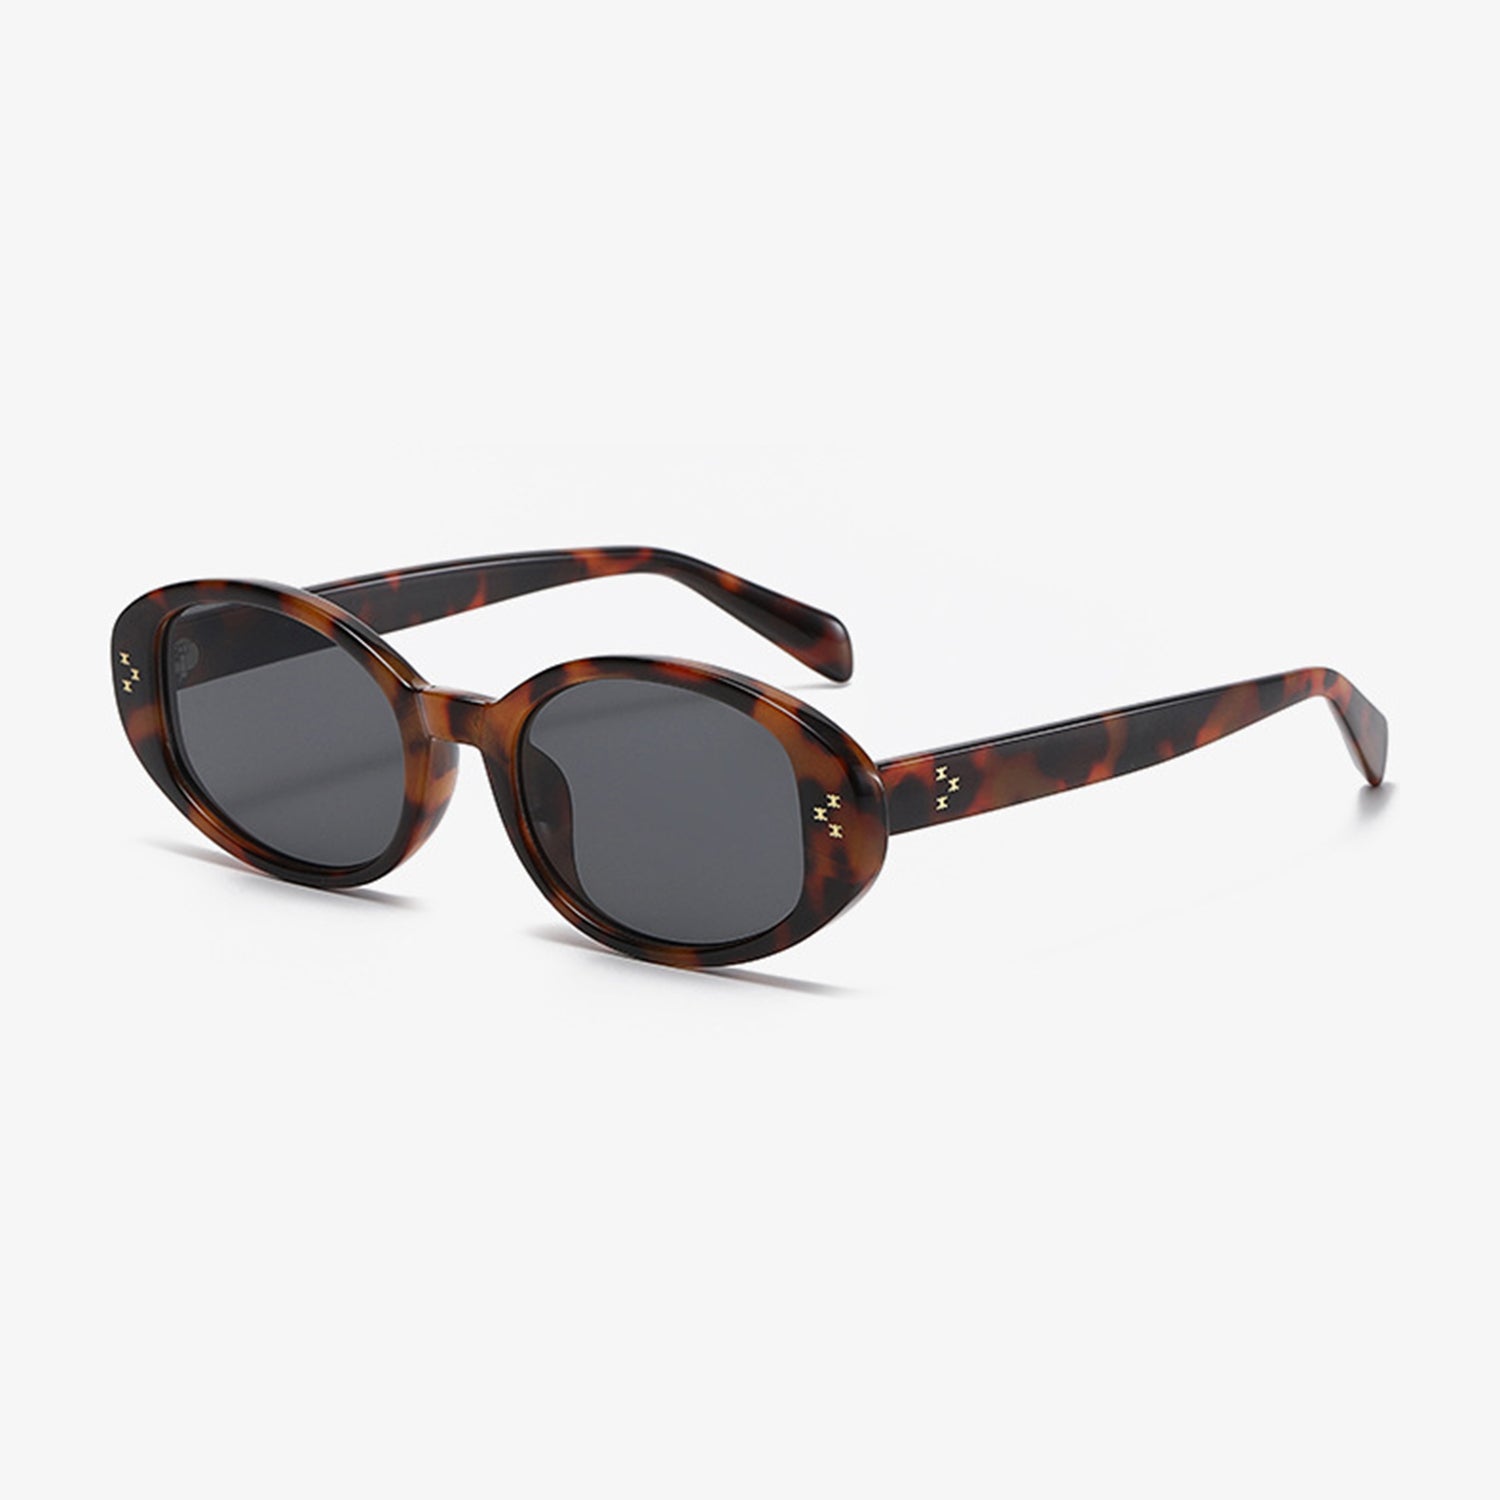 TEEK - Styled Oval Frame Oval Sunglasses EYEGLASSES TEEK Trend   